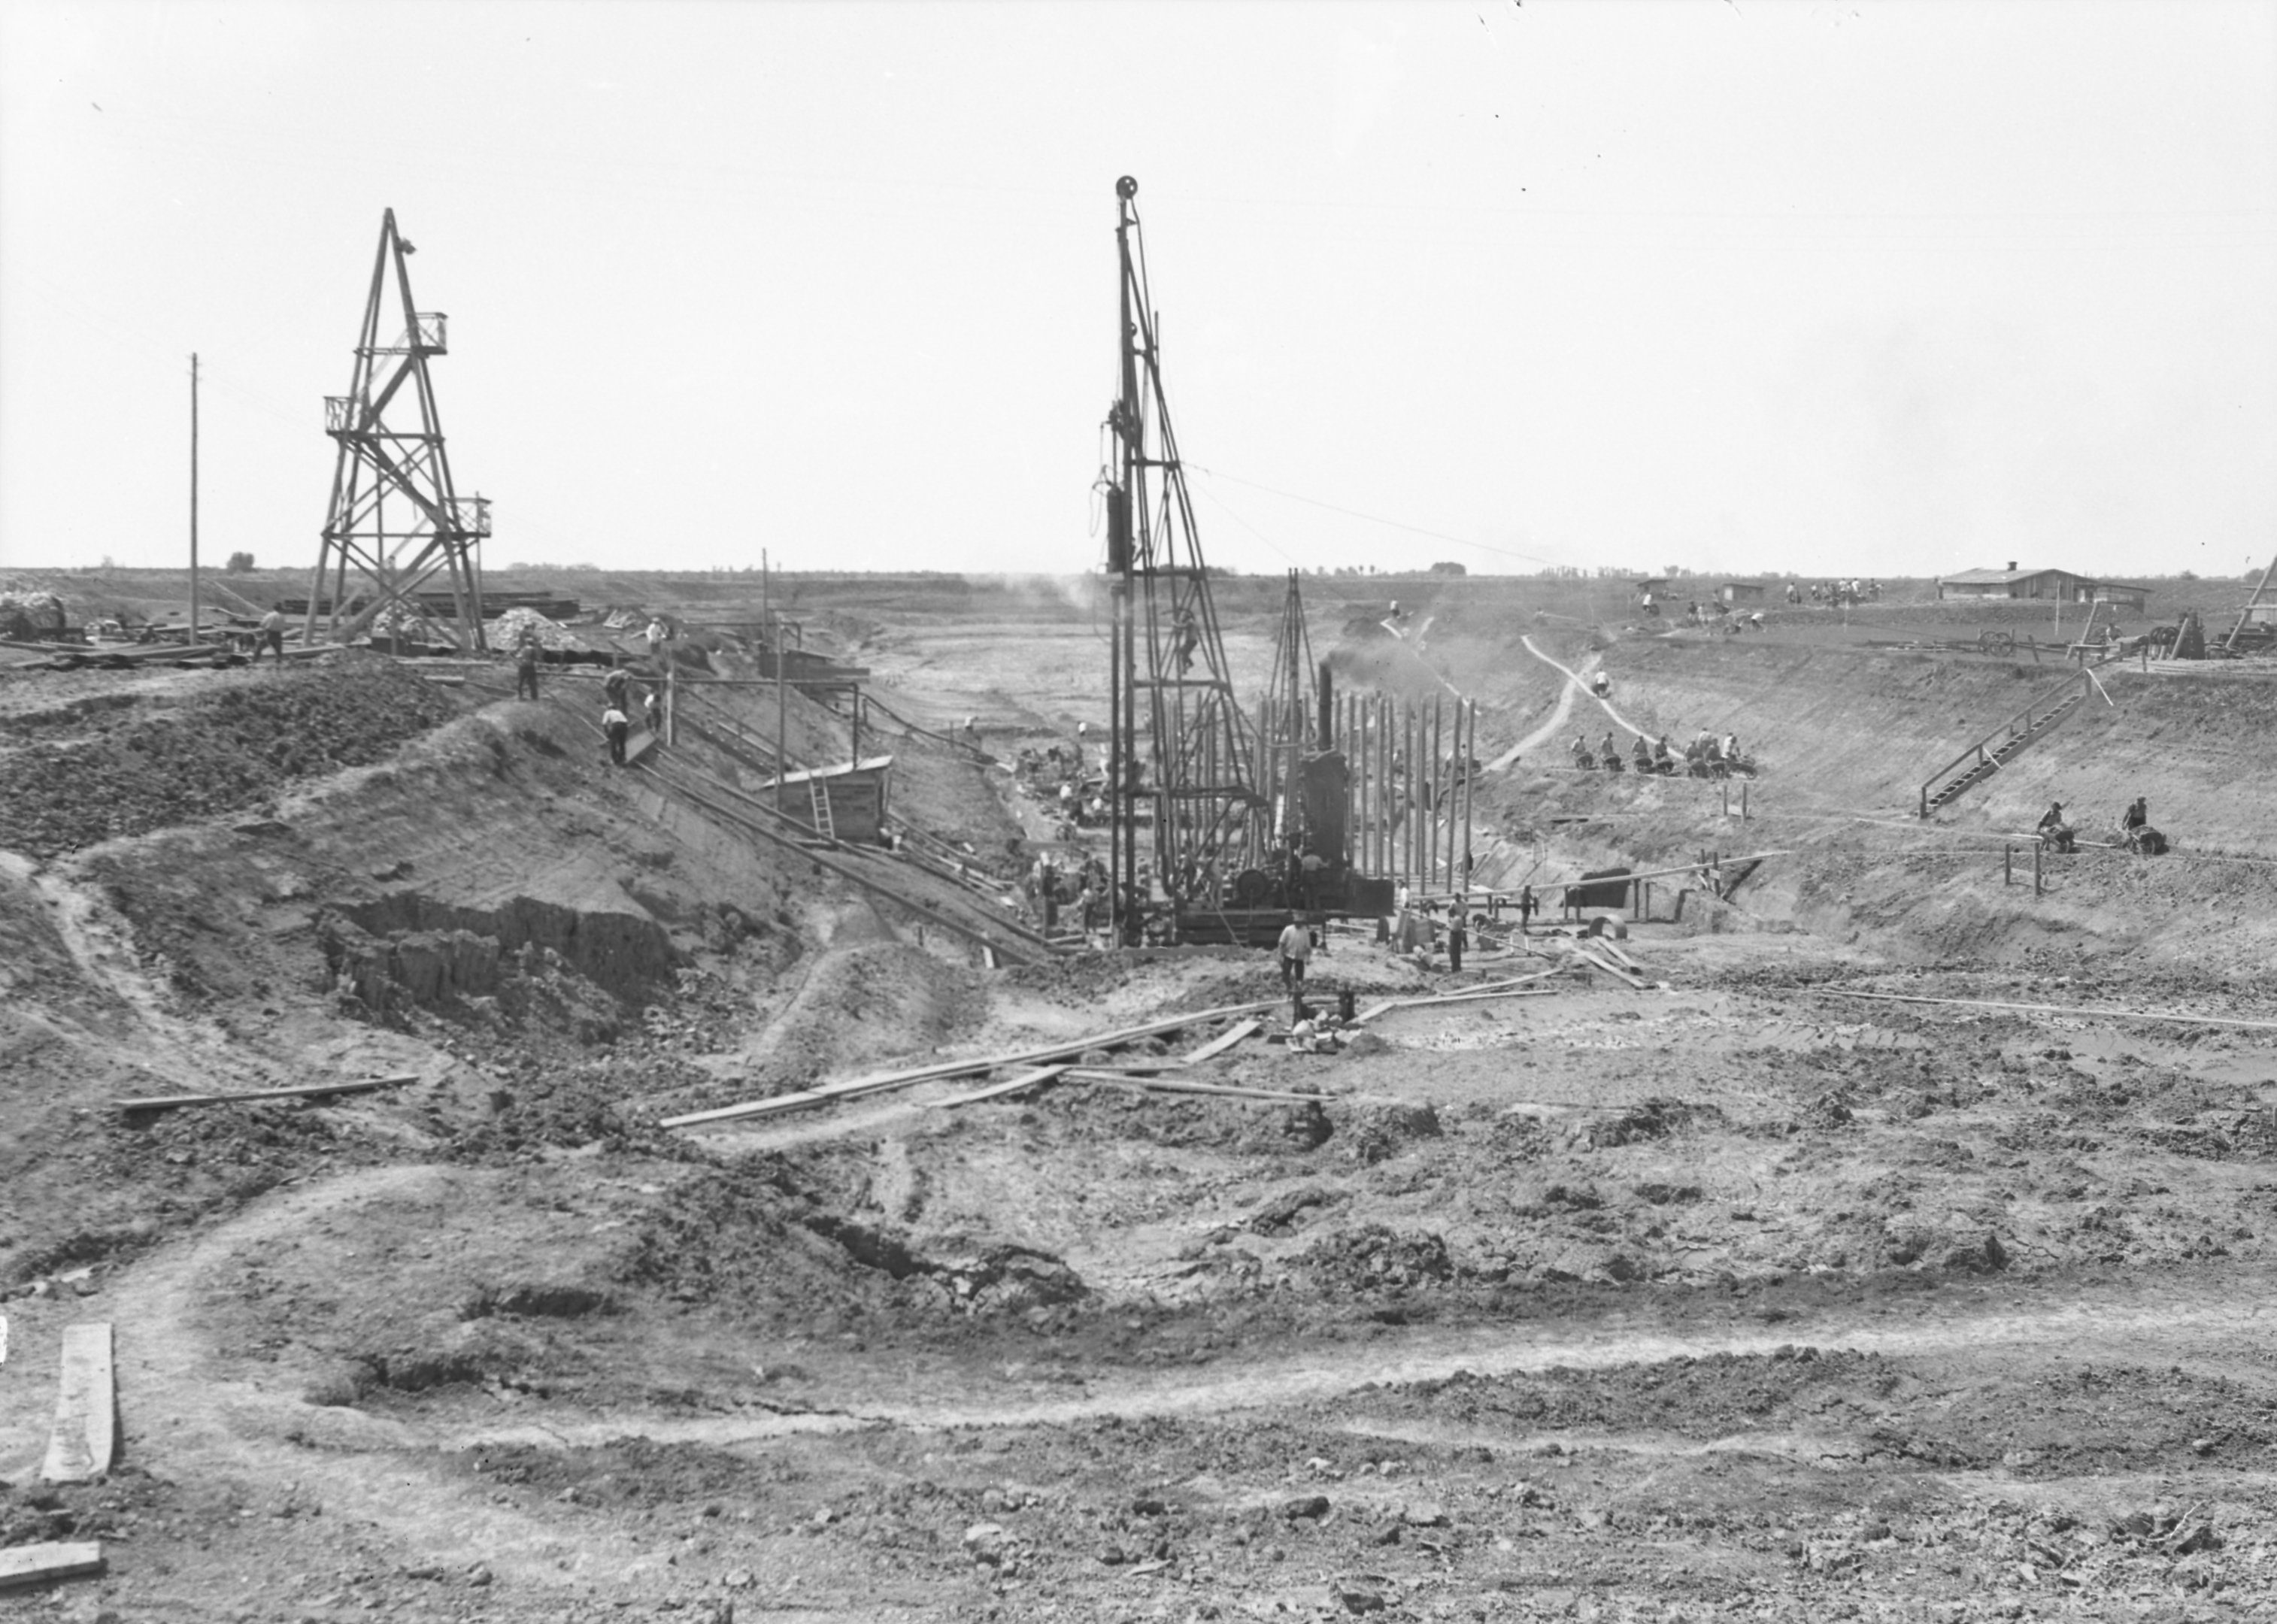 Földkiemelés a hajózózsilip helyén - Larssen verés a felső főnél, 1939. május 17. (Magyar Környezetvédelmi és Vízügyi Múzeum - Duna Múzeum CC BY-NC-SA)